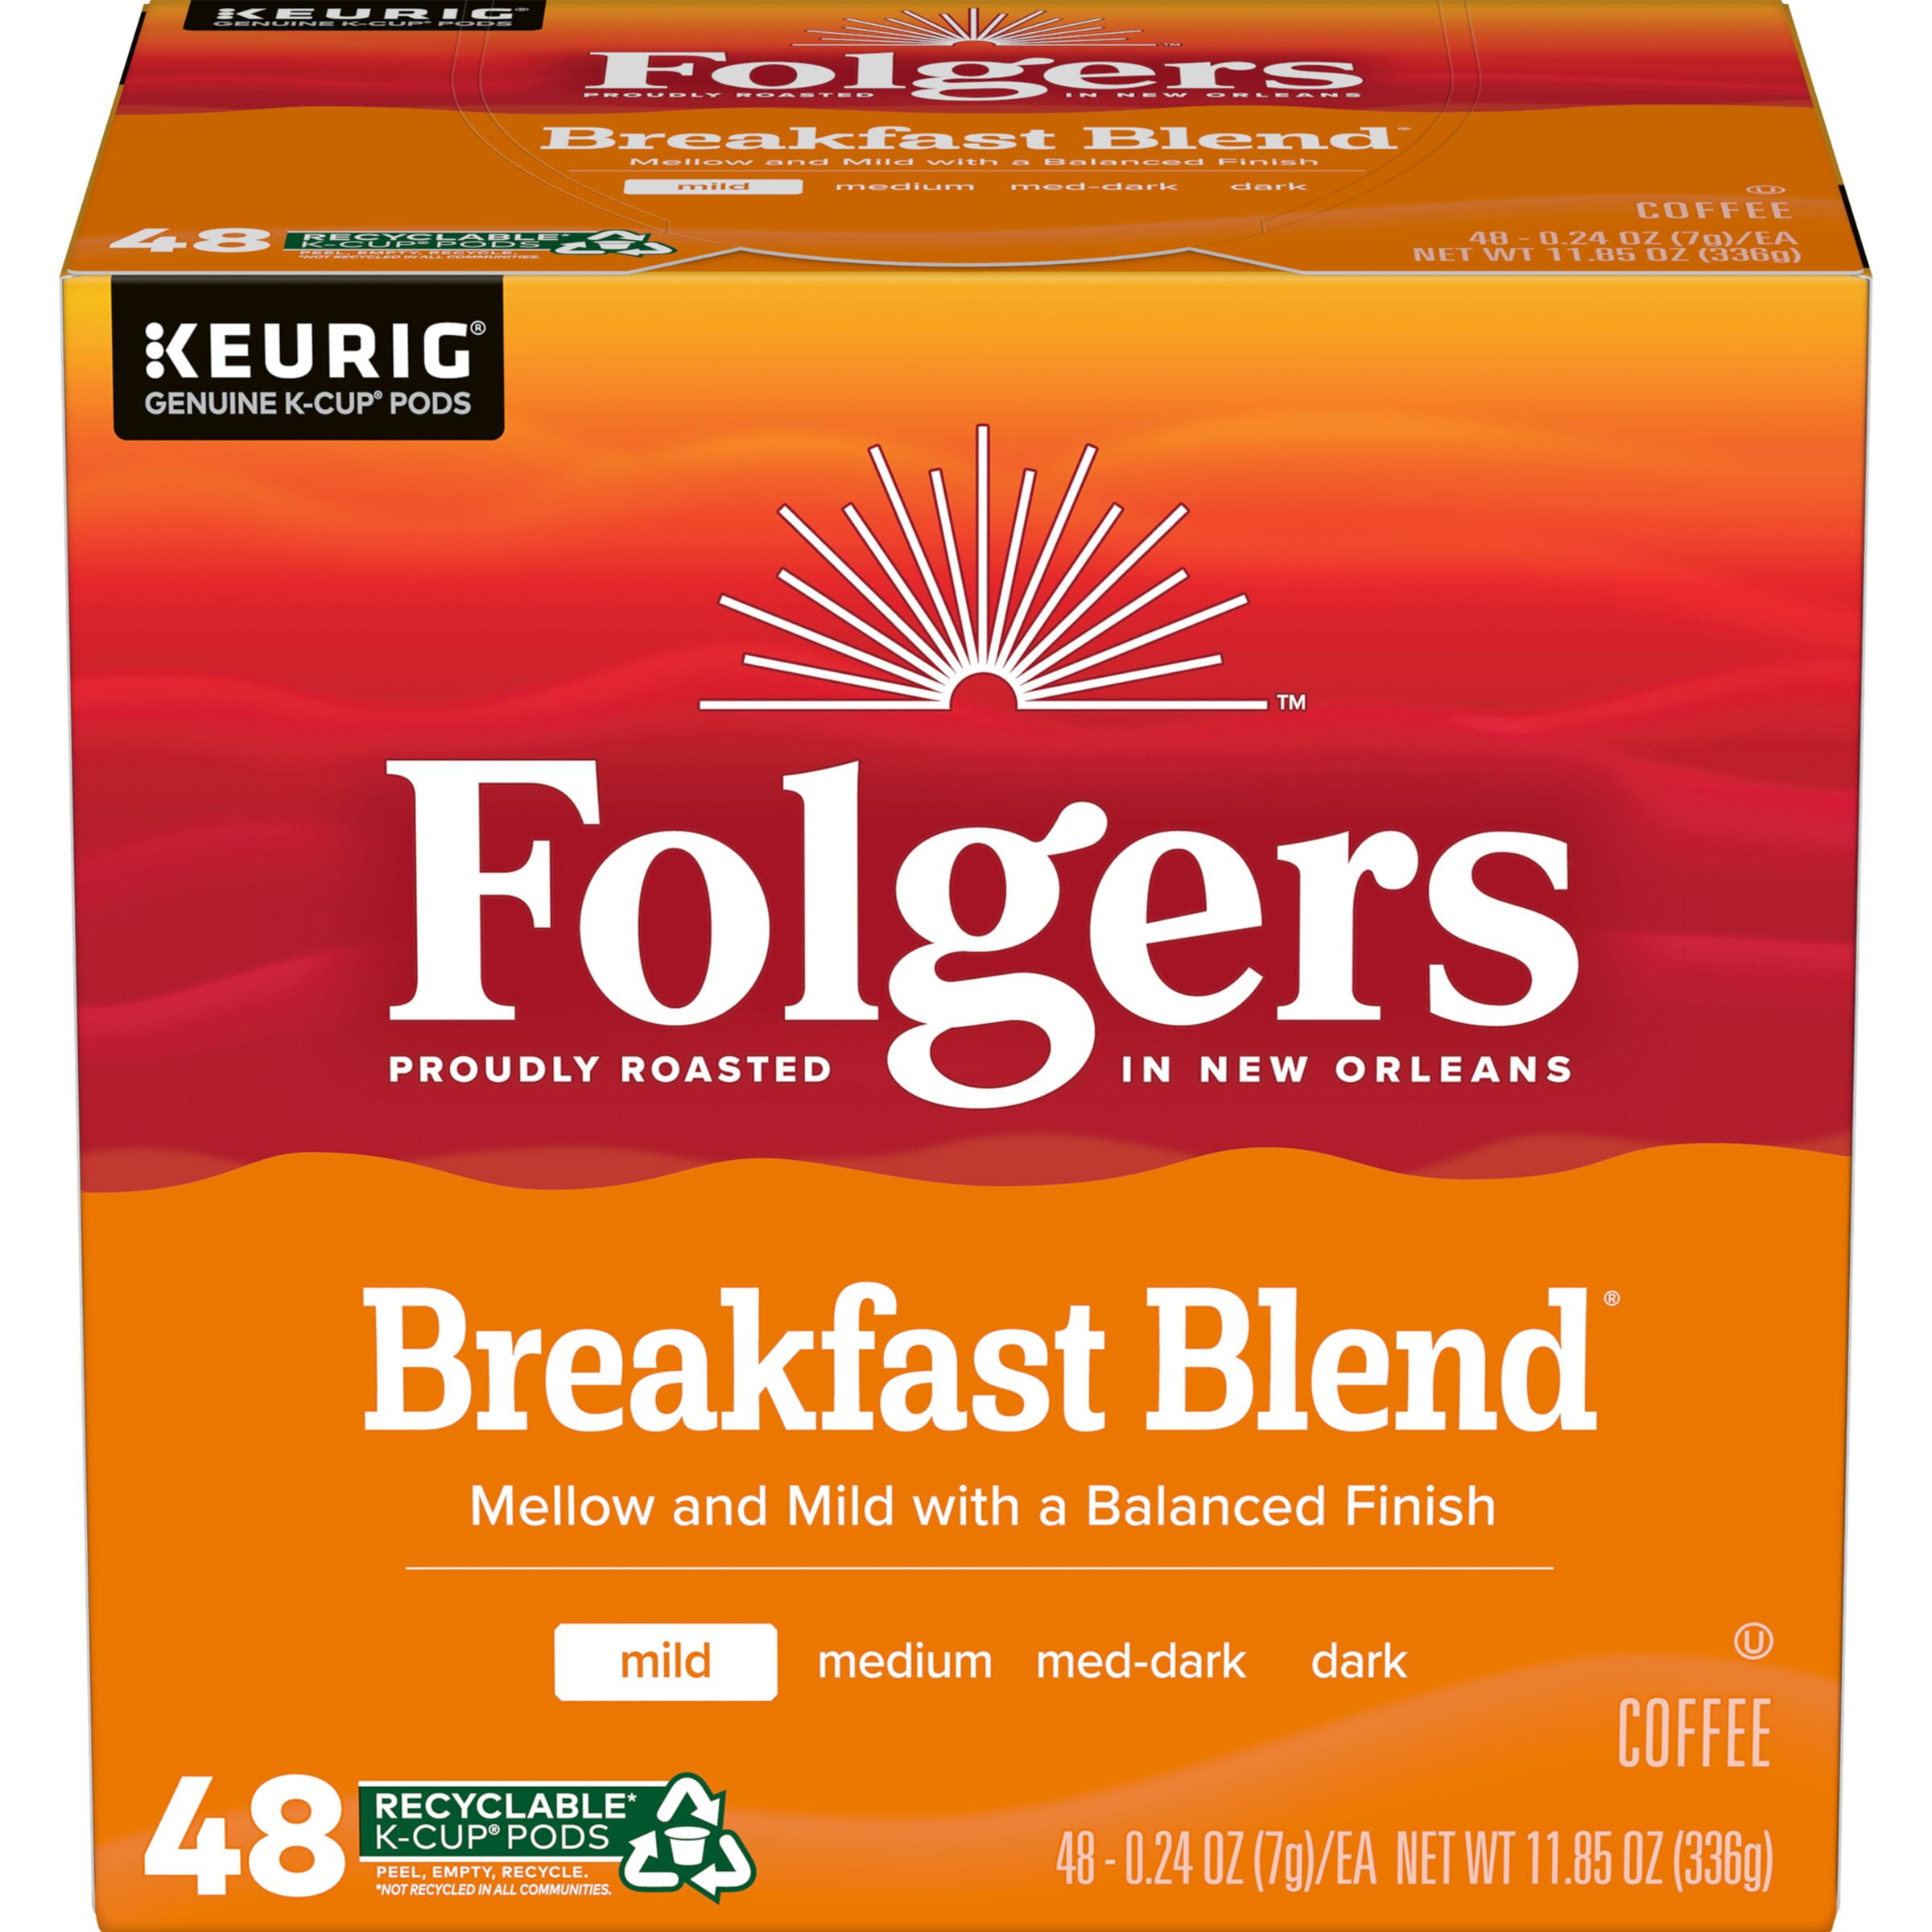 Folgers Breakfast Blend Keurig K-Cup Pods, Mild Roast Coffee, 48 Count